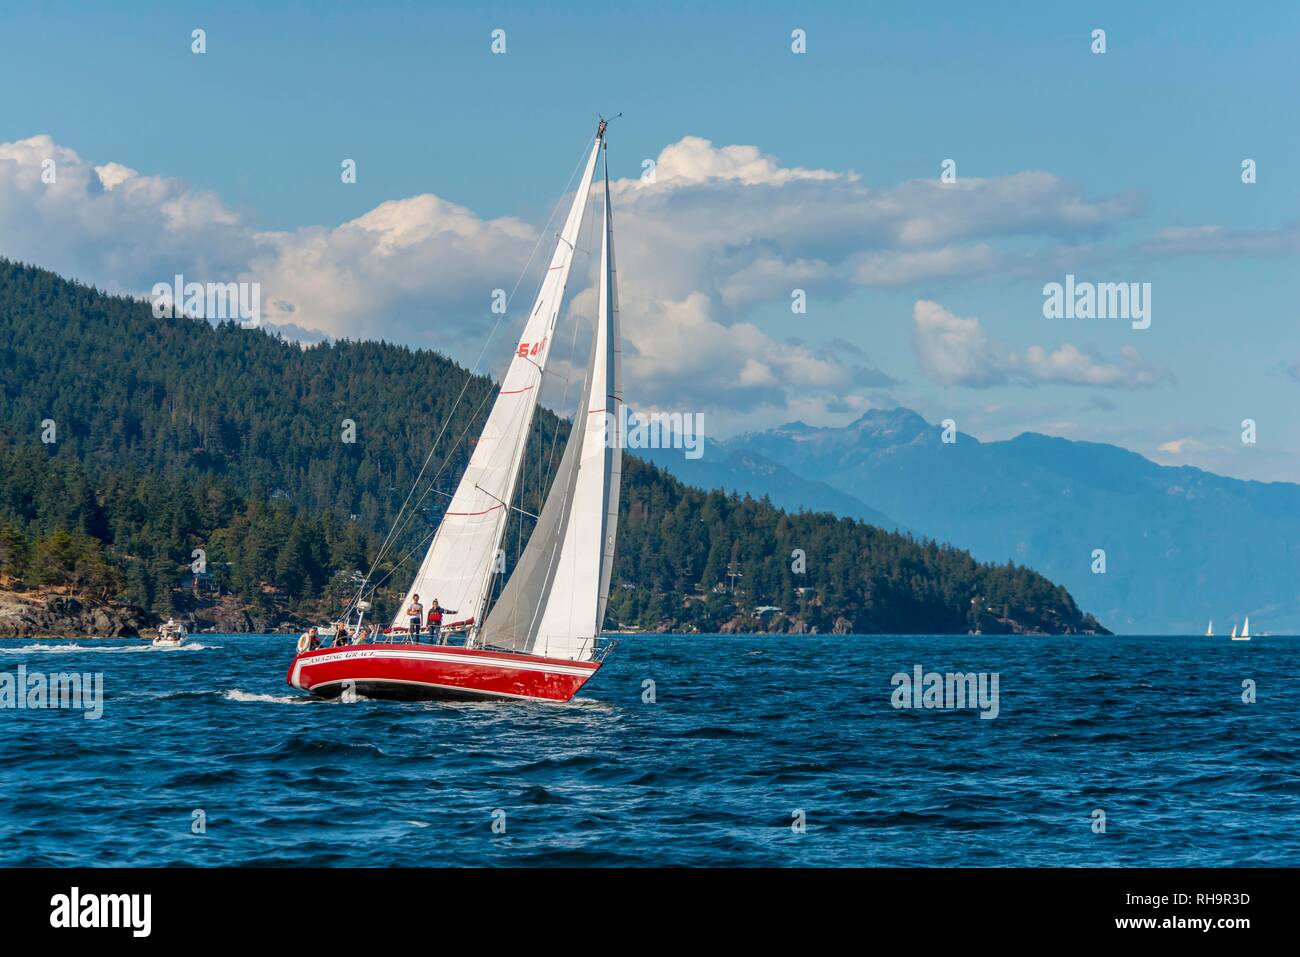 Voilier sur la mer, la baie Howe, près de Vancouver, Colombie-Britannique, Canada Banque D'Images